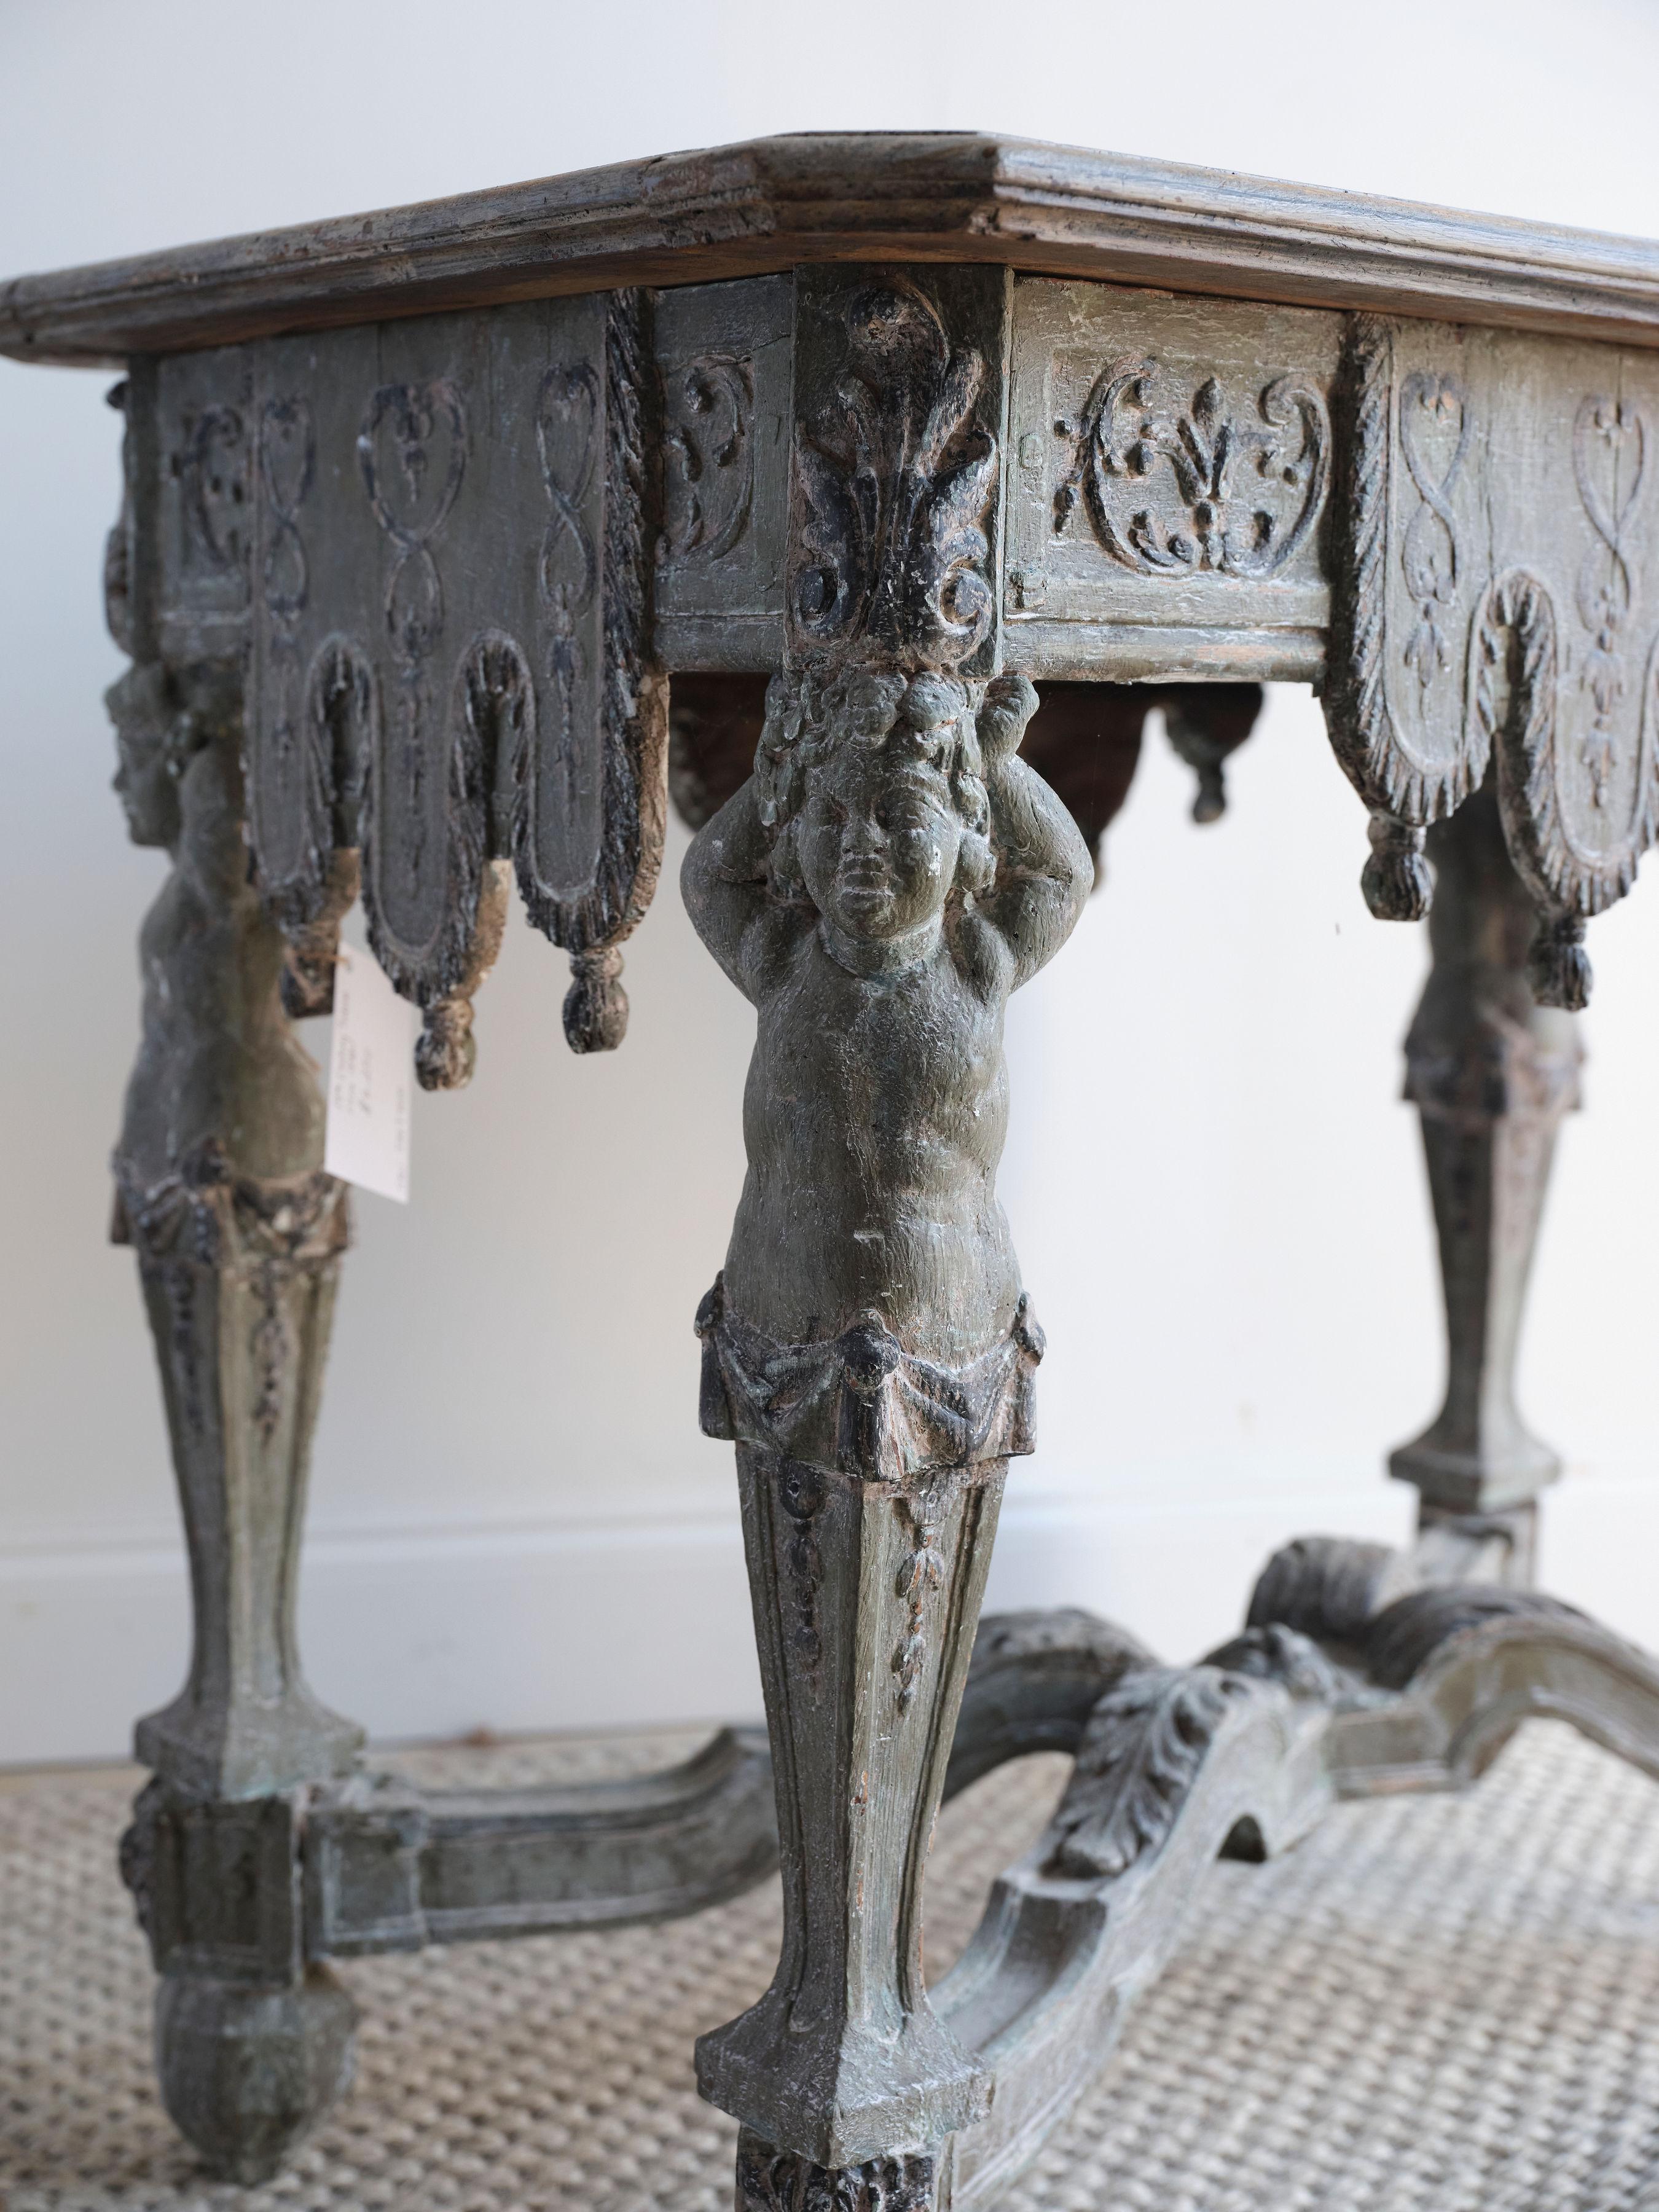 Cette superbe table console de style Renaissance présente de nombreux détails uniques sculptés dans le bois. Il est vraiment unique en son genre. Chaque pied de la table présente la sculpture d'un jeune enfant portant la base de la table sur sa